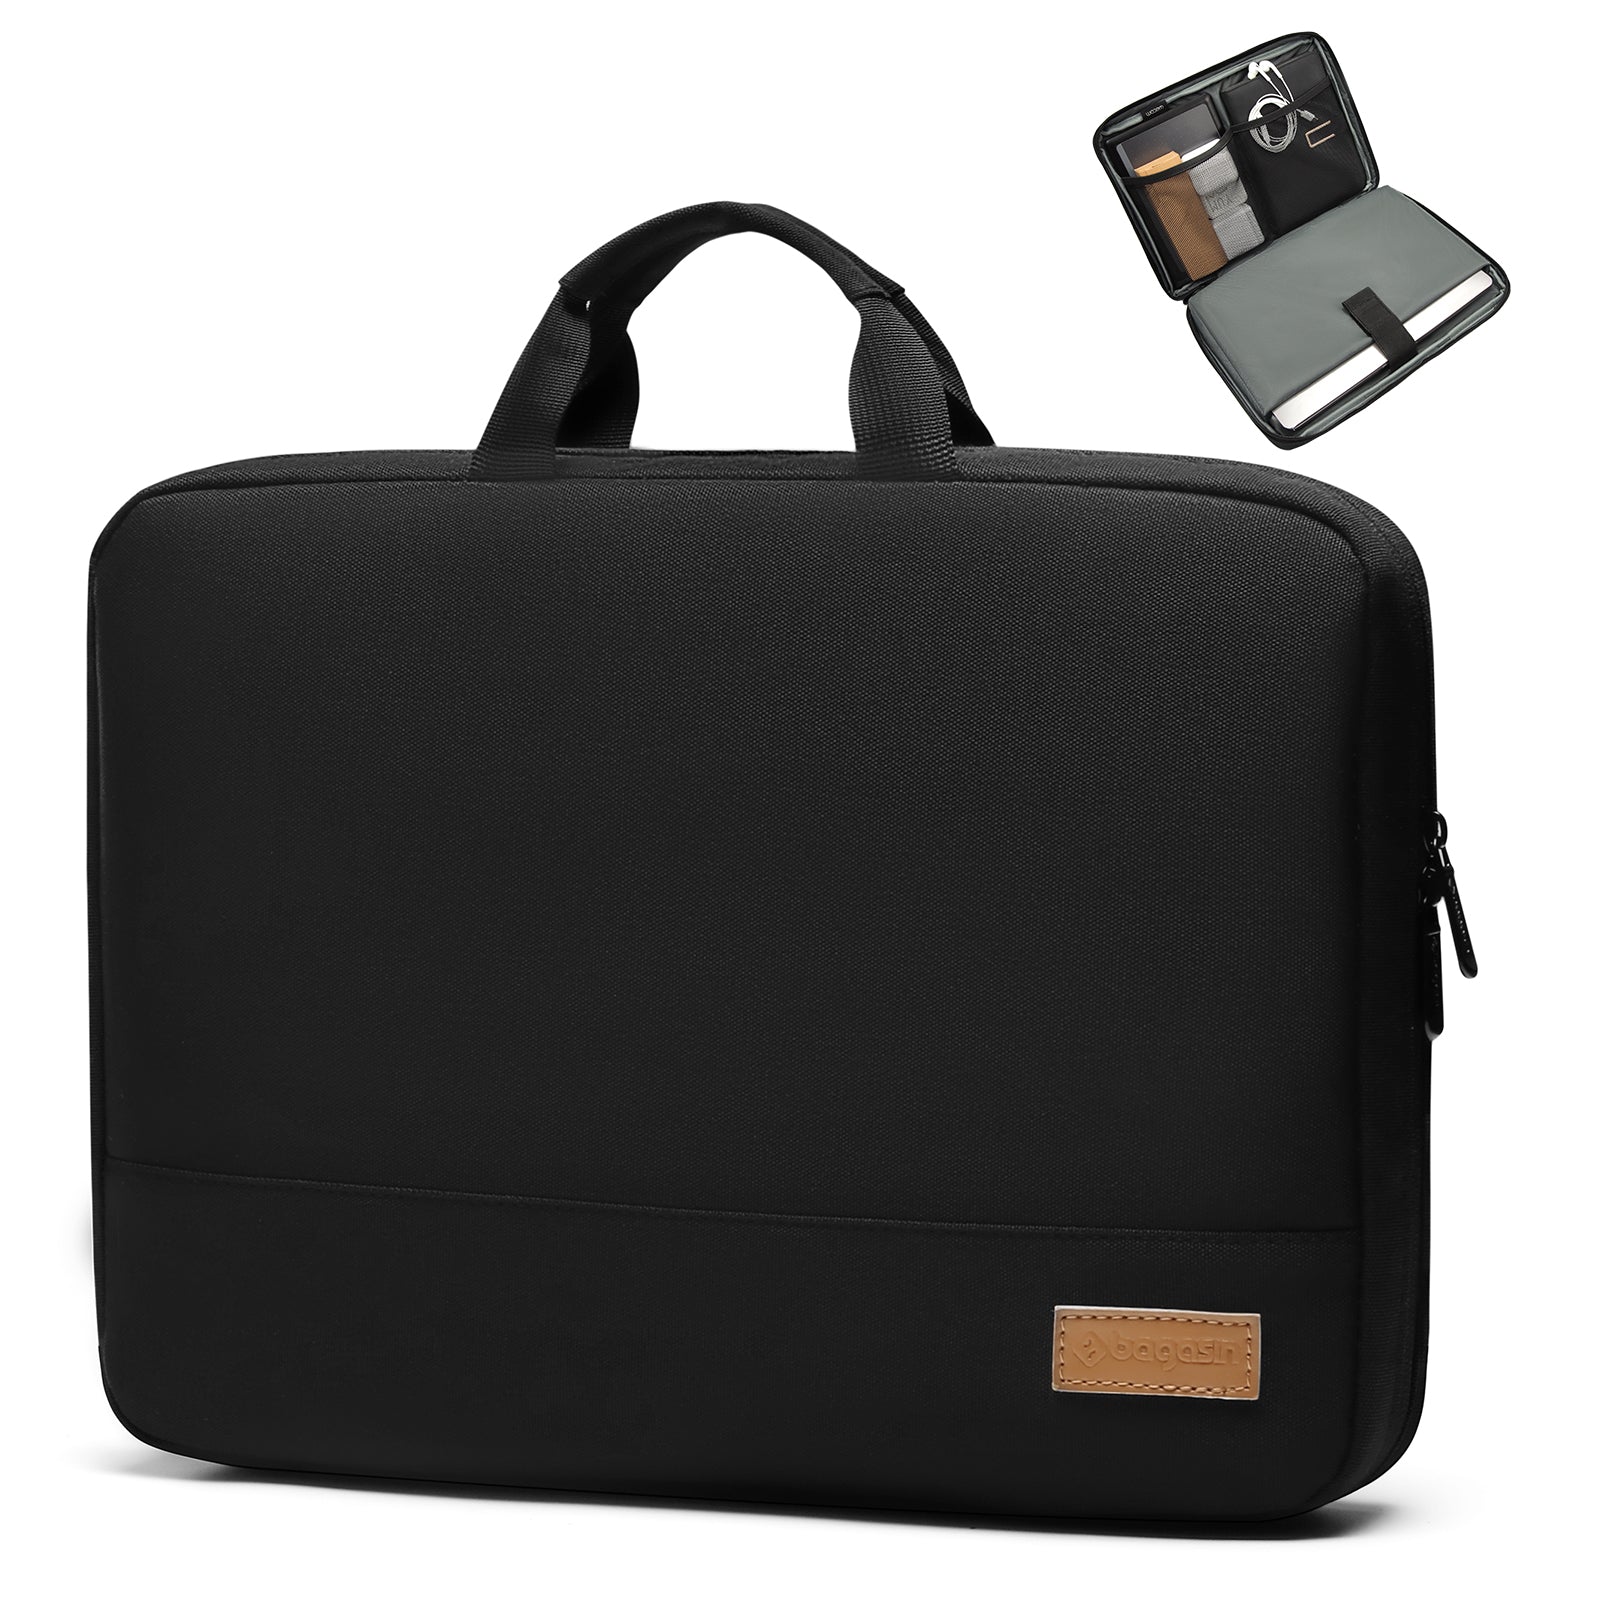 ASUS BP4600 23 L Laptop Backpack Grey - Price in India | Flipkart.com